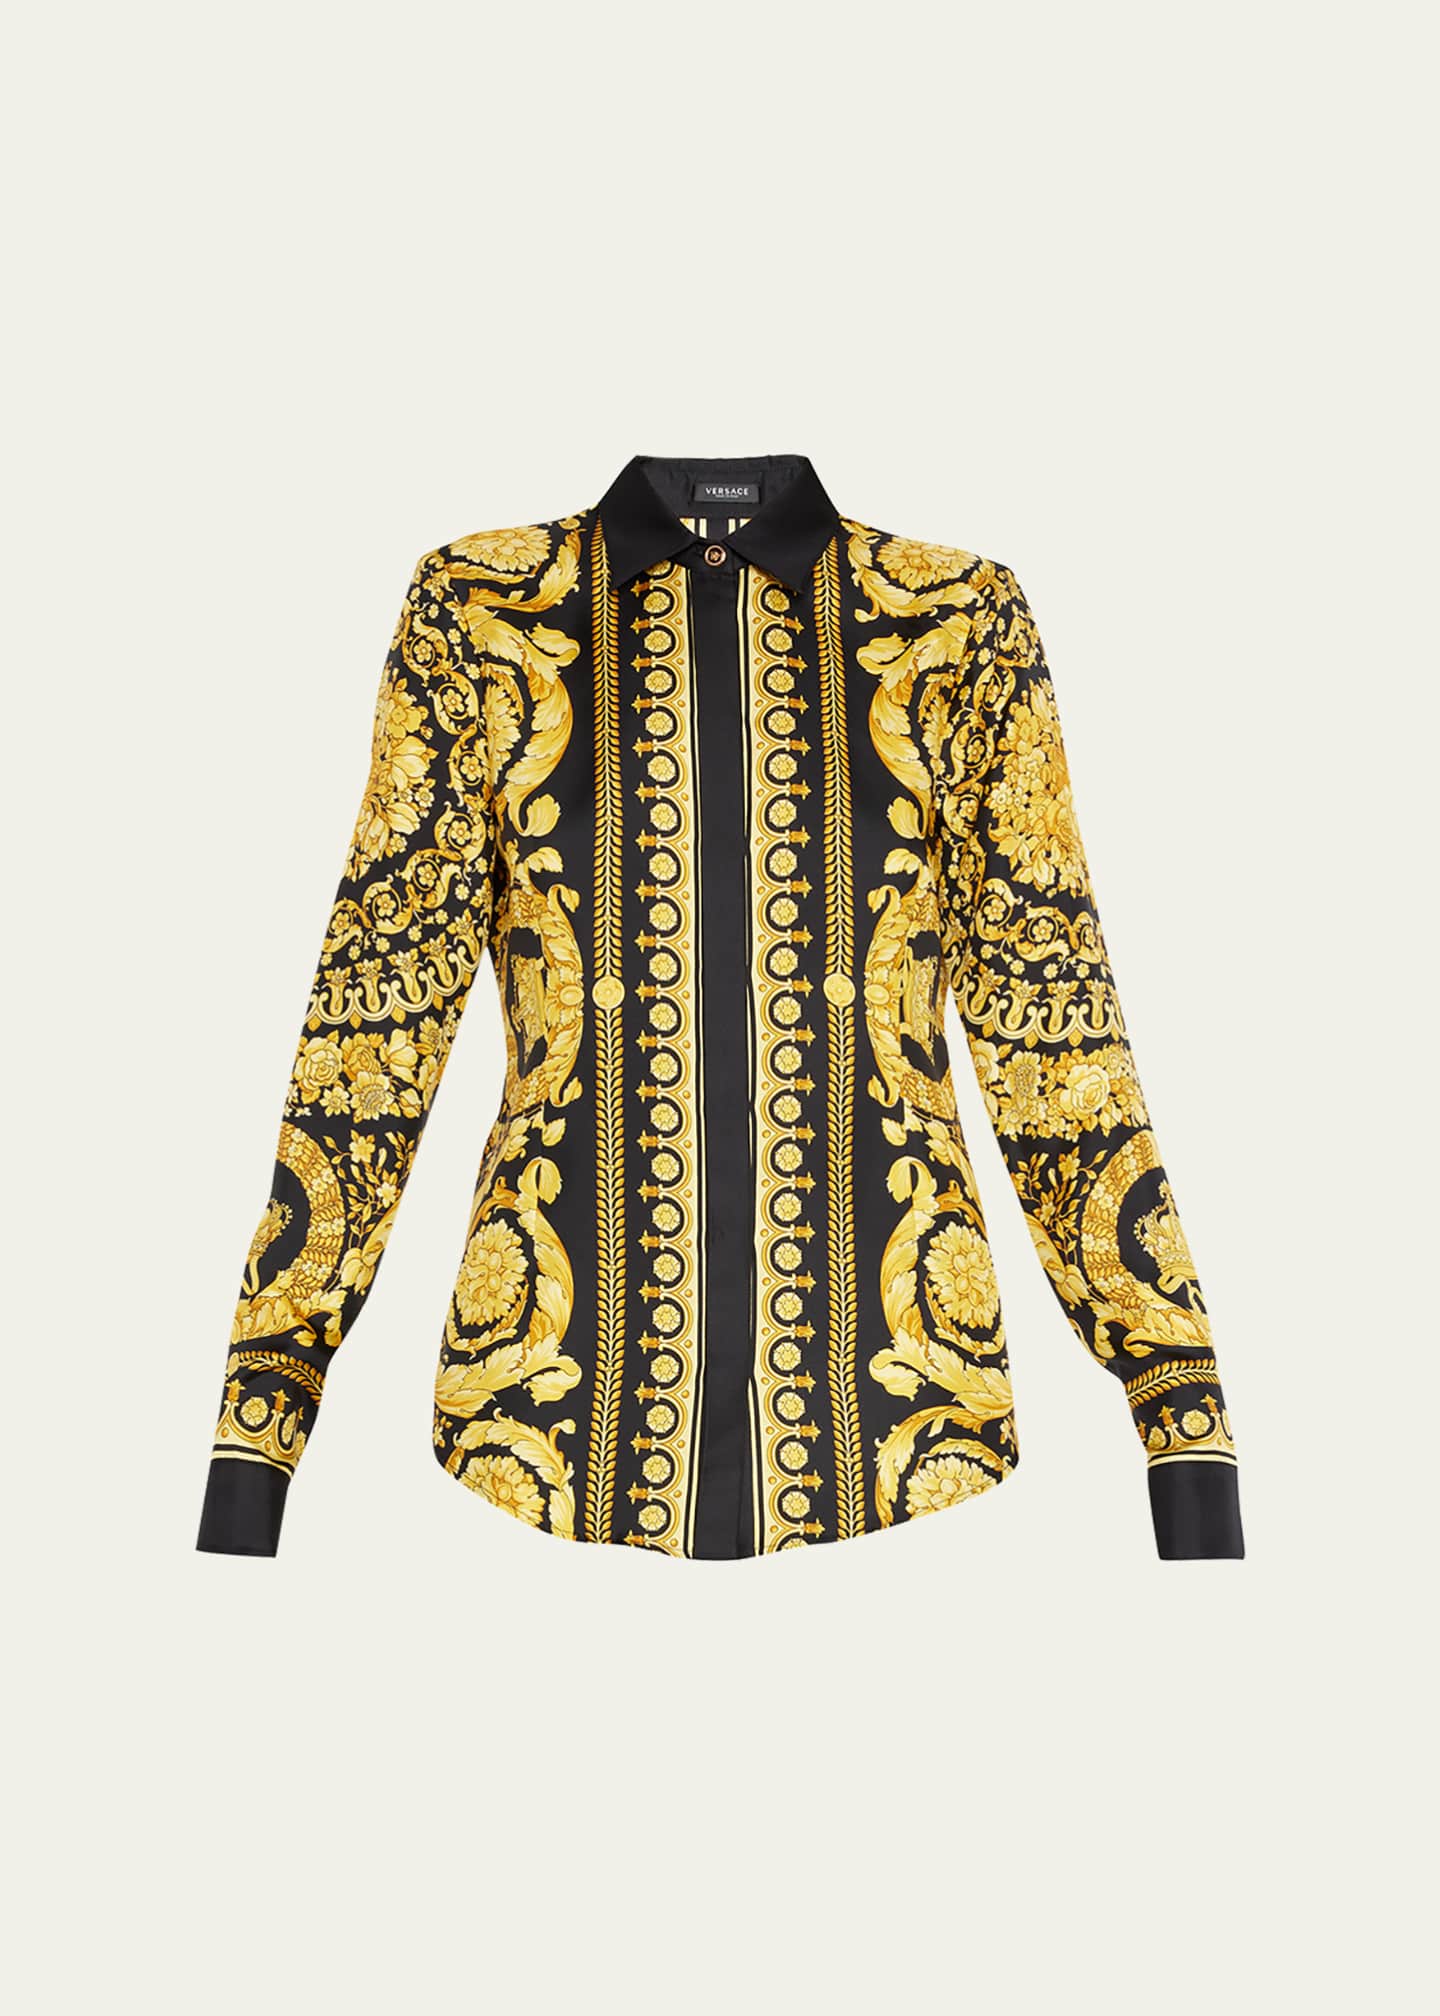 Versace Baroque SS'92 Silk Shirt Dress for Women